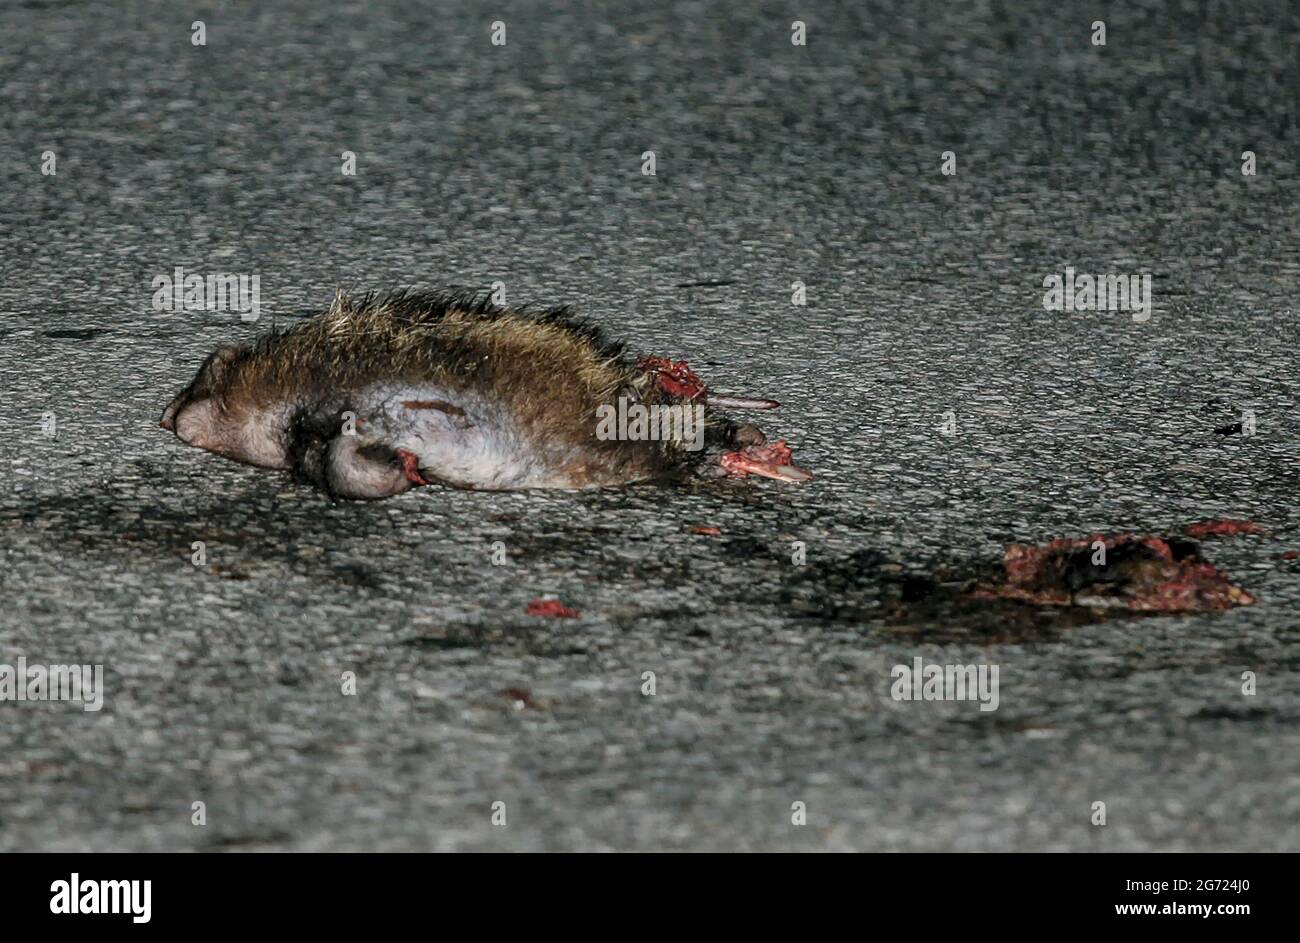 July 10, 2021-Wonju, South Korea-A Dead racoon body flatten on the road in Wonju, South Korea. Stock Photo